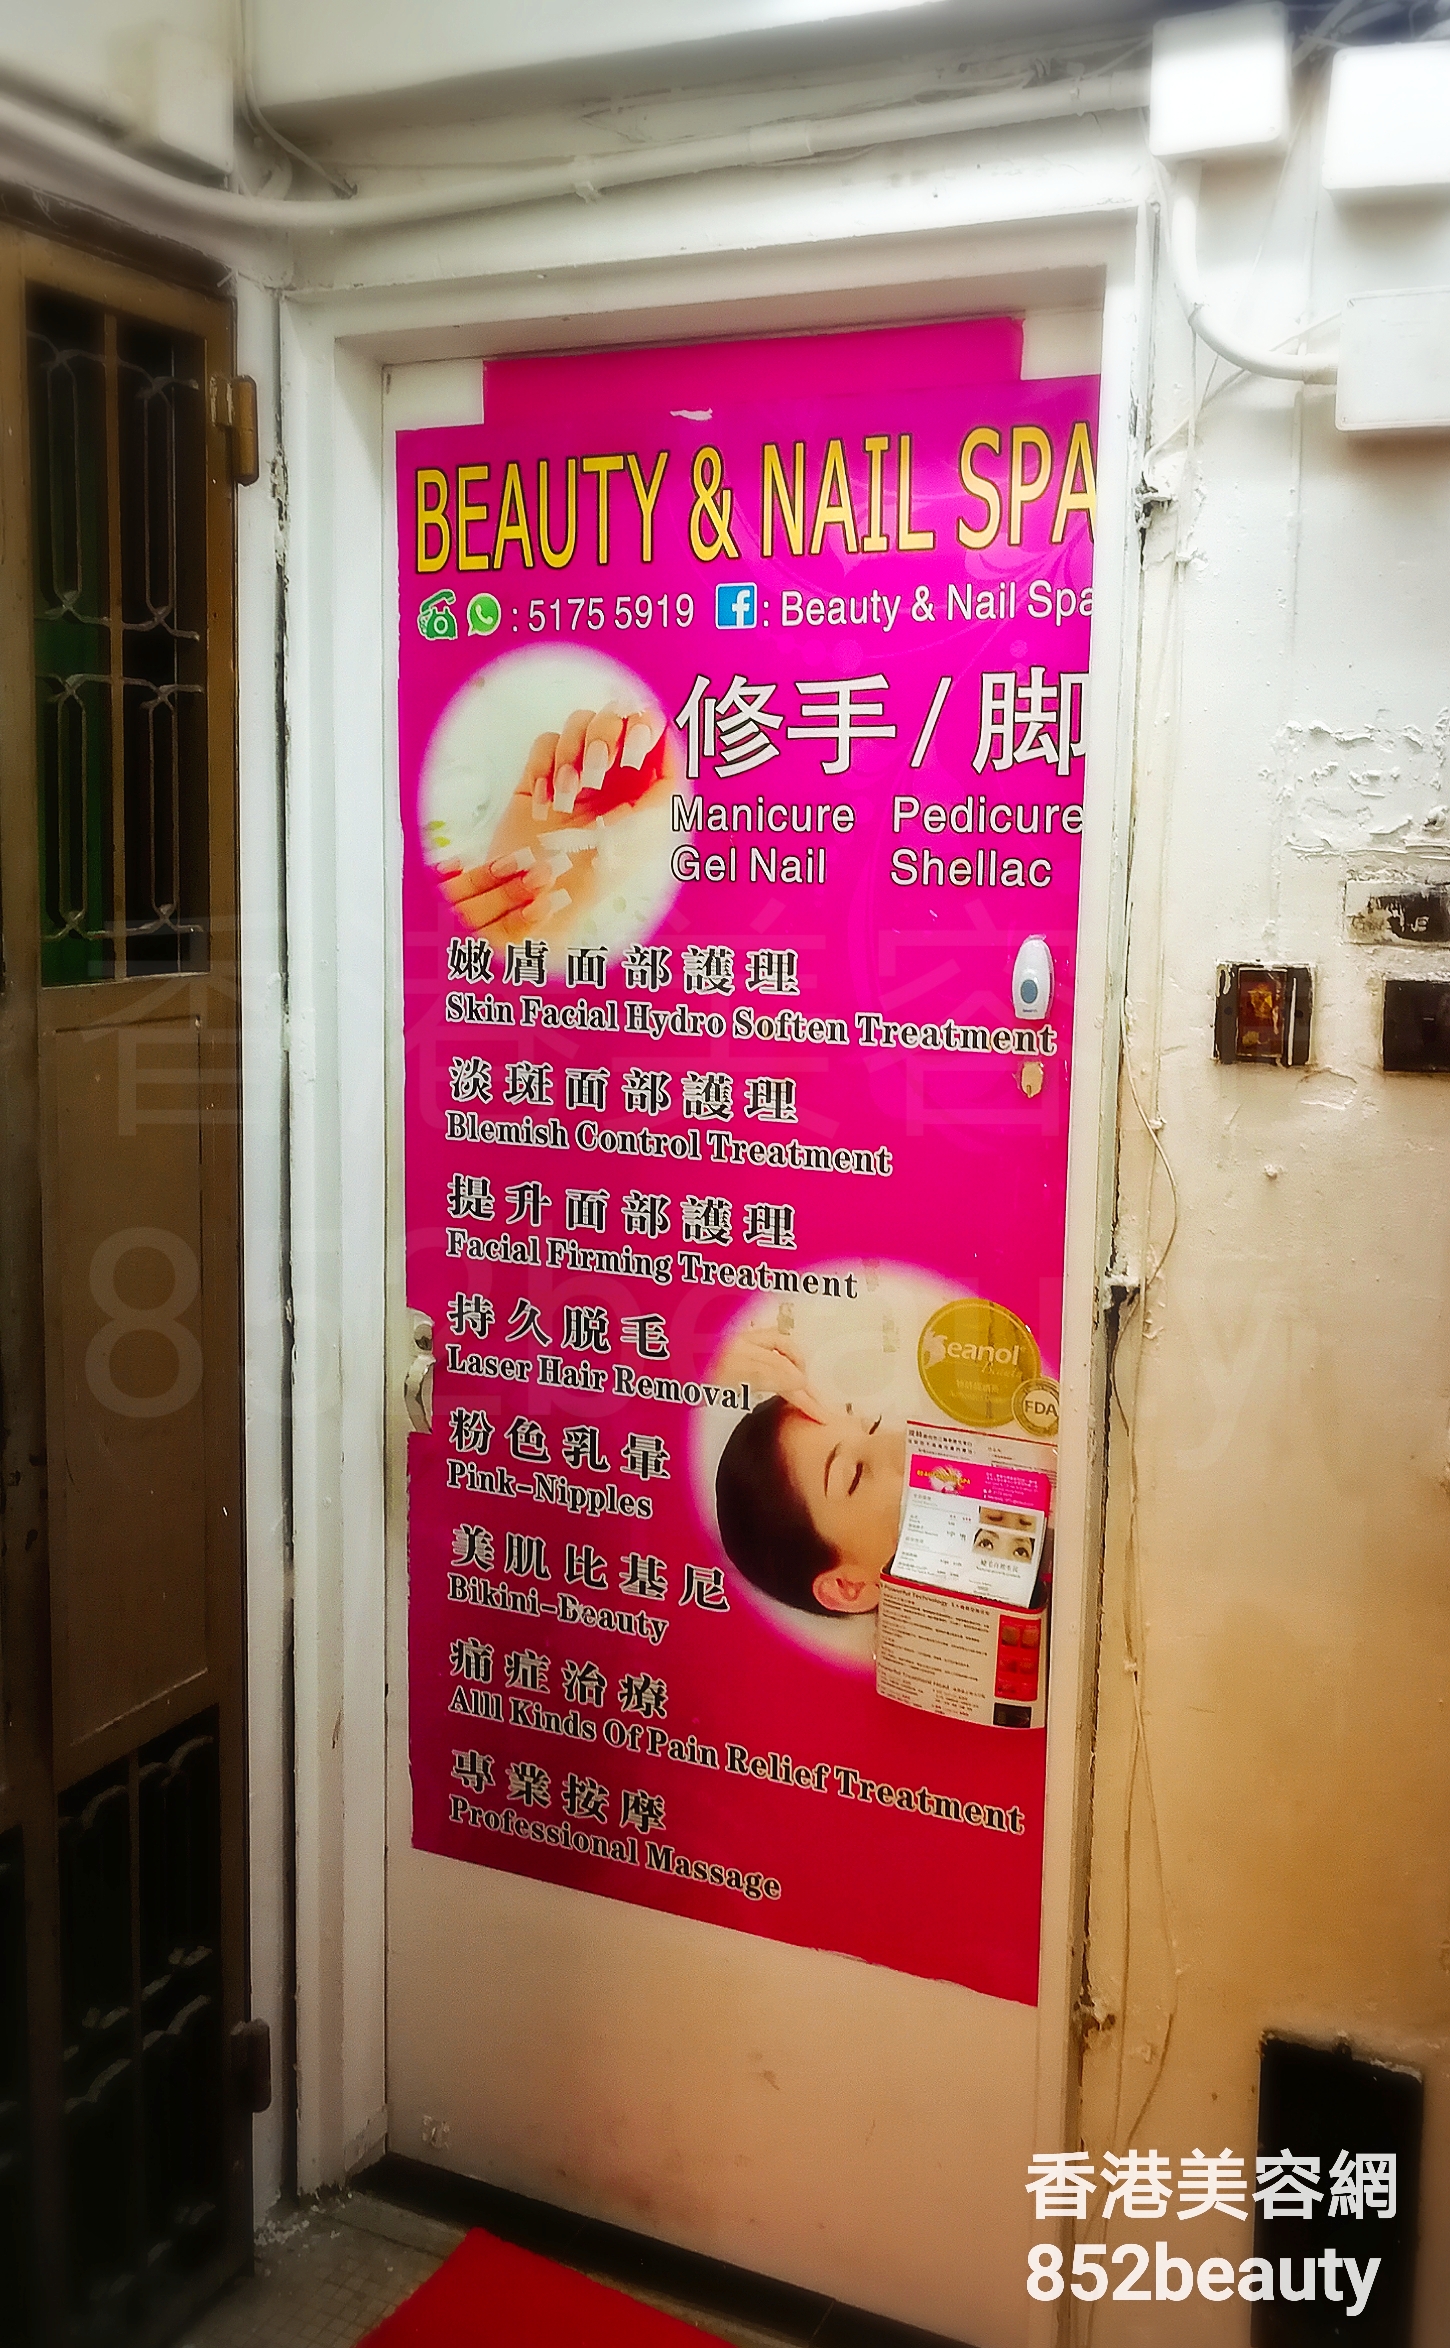 Massage/SPA: Beauty & Nail Spa